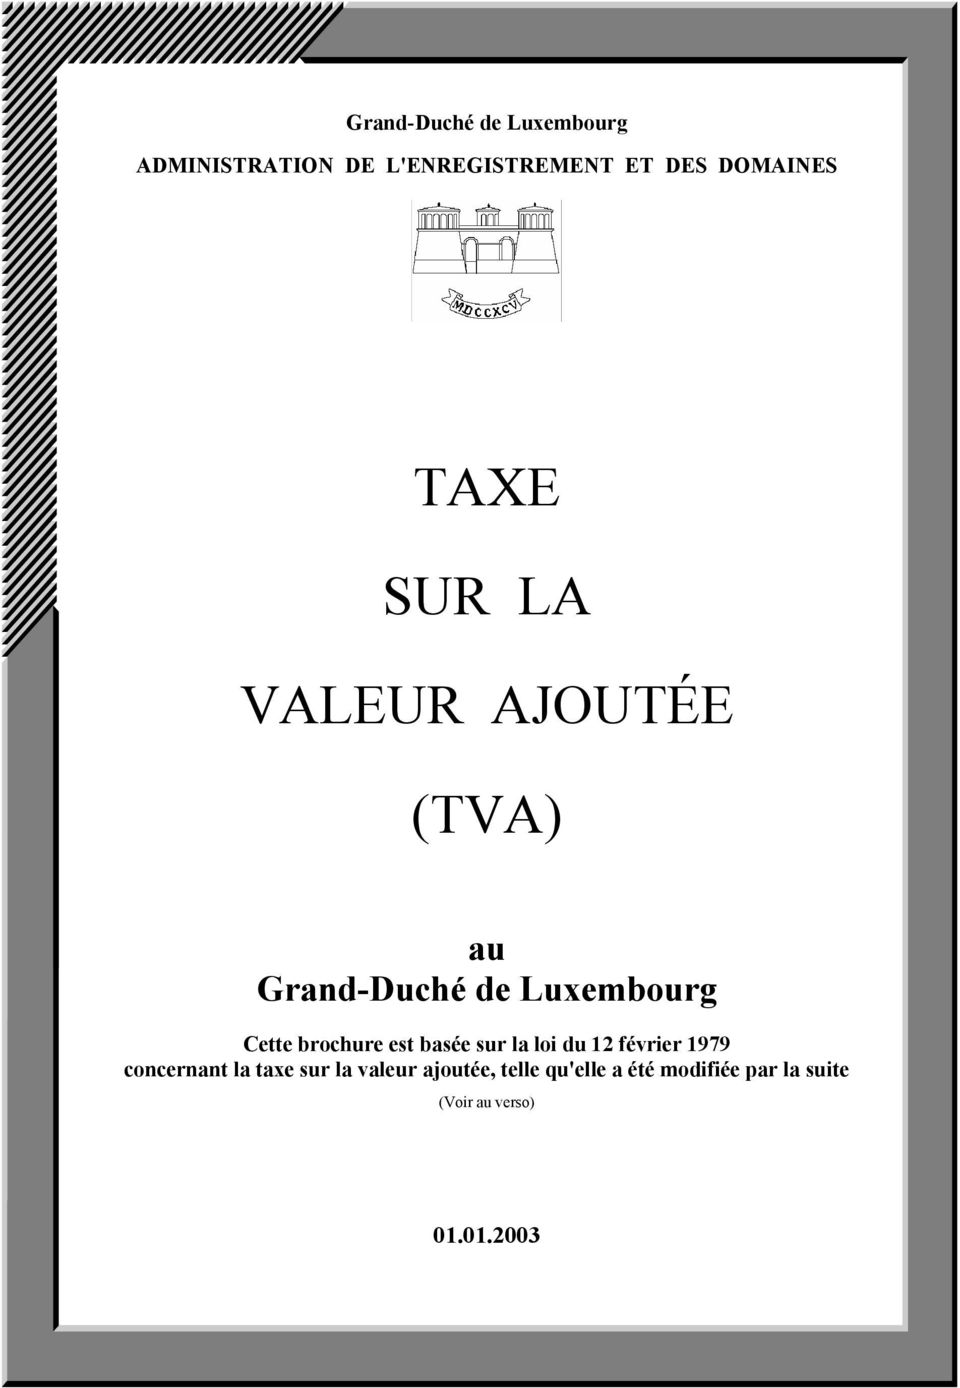 Cette brochure est basée sur la loi du 12 février 1979 concernant la taxe